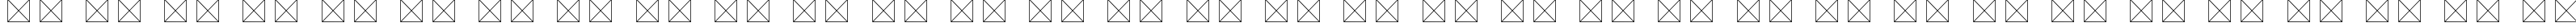 Пример написания русского алфавита шрифтом Botera TFE